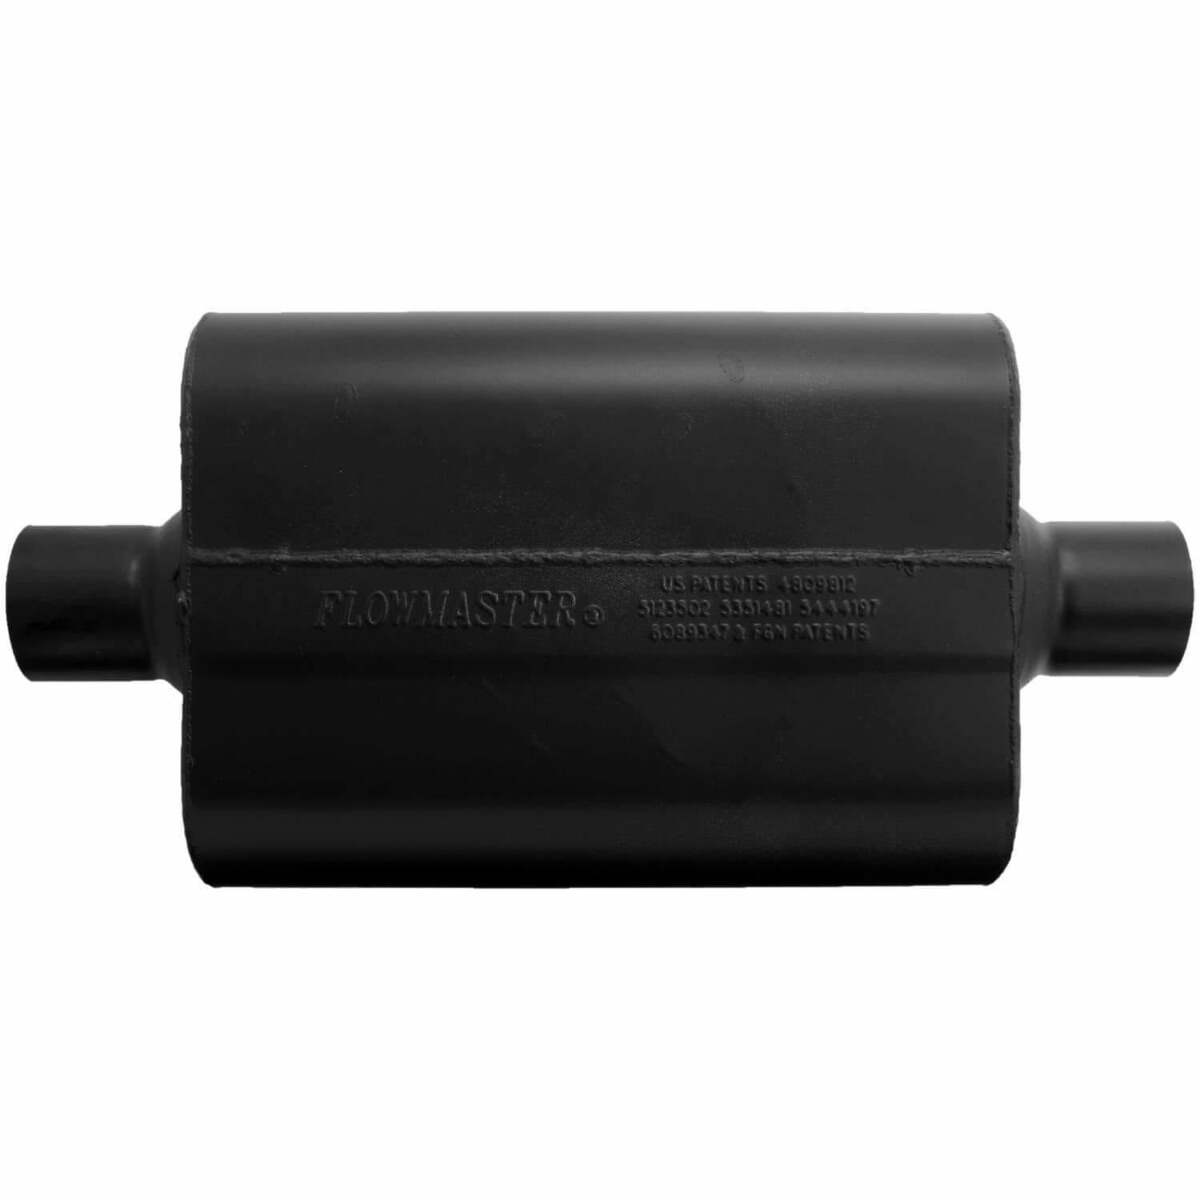 Flowmaster Super 44 Series Chambered Muffler 942545